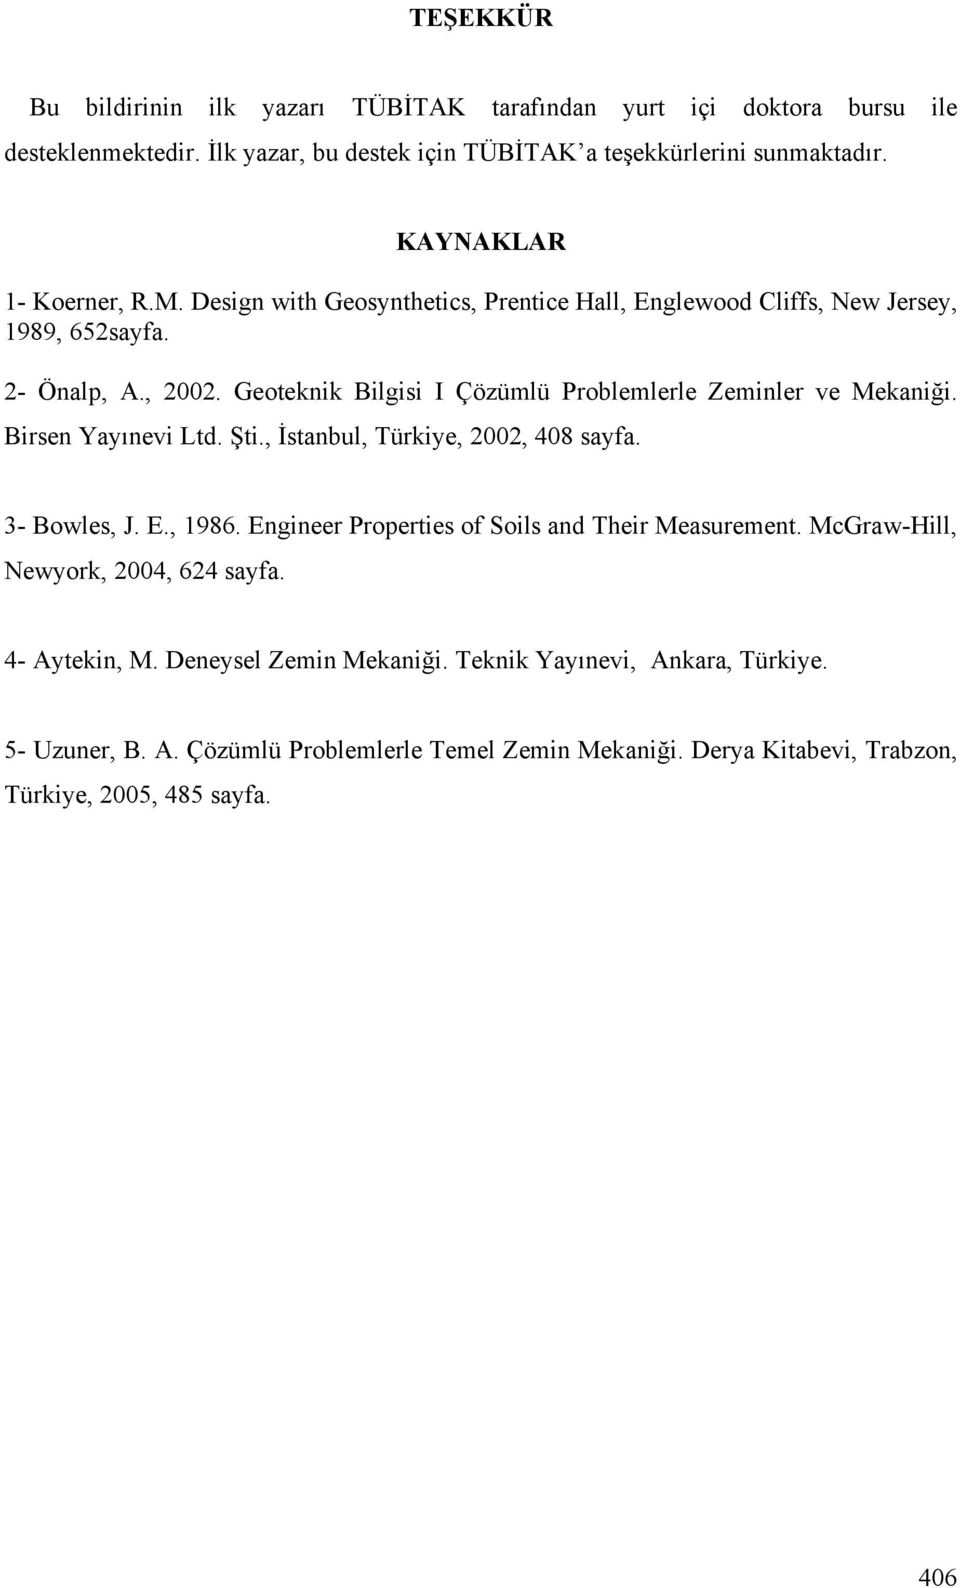 Geoteknik Bilgisi I Çözümlü Problemlerle Zeminler ve Mekani i. Birsen Yayınevi Ltd. ti., stanbul, Türkiye, 2002, 408 sayfa. 3- Bowles, J. E., 1986.